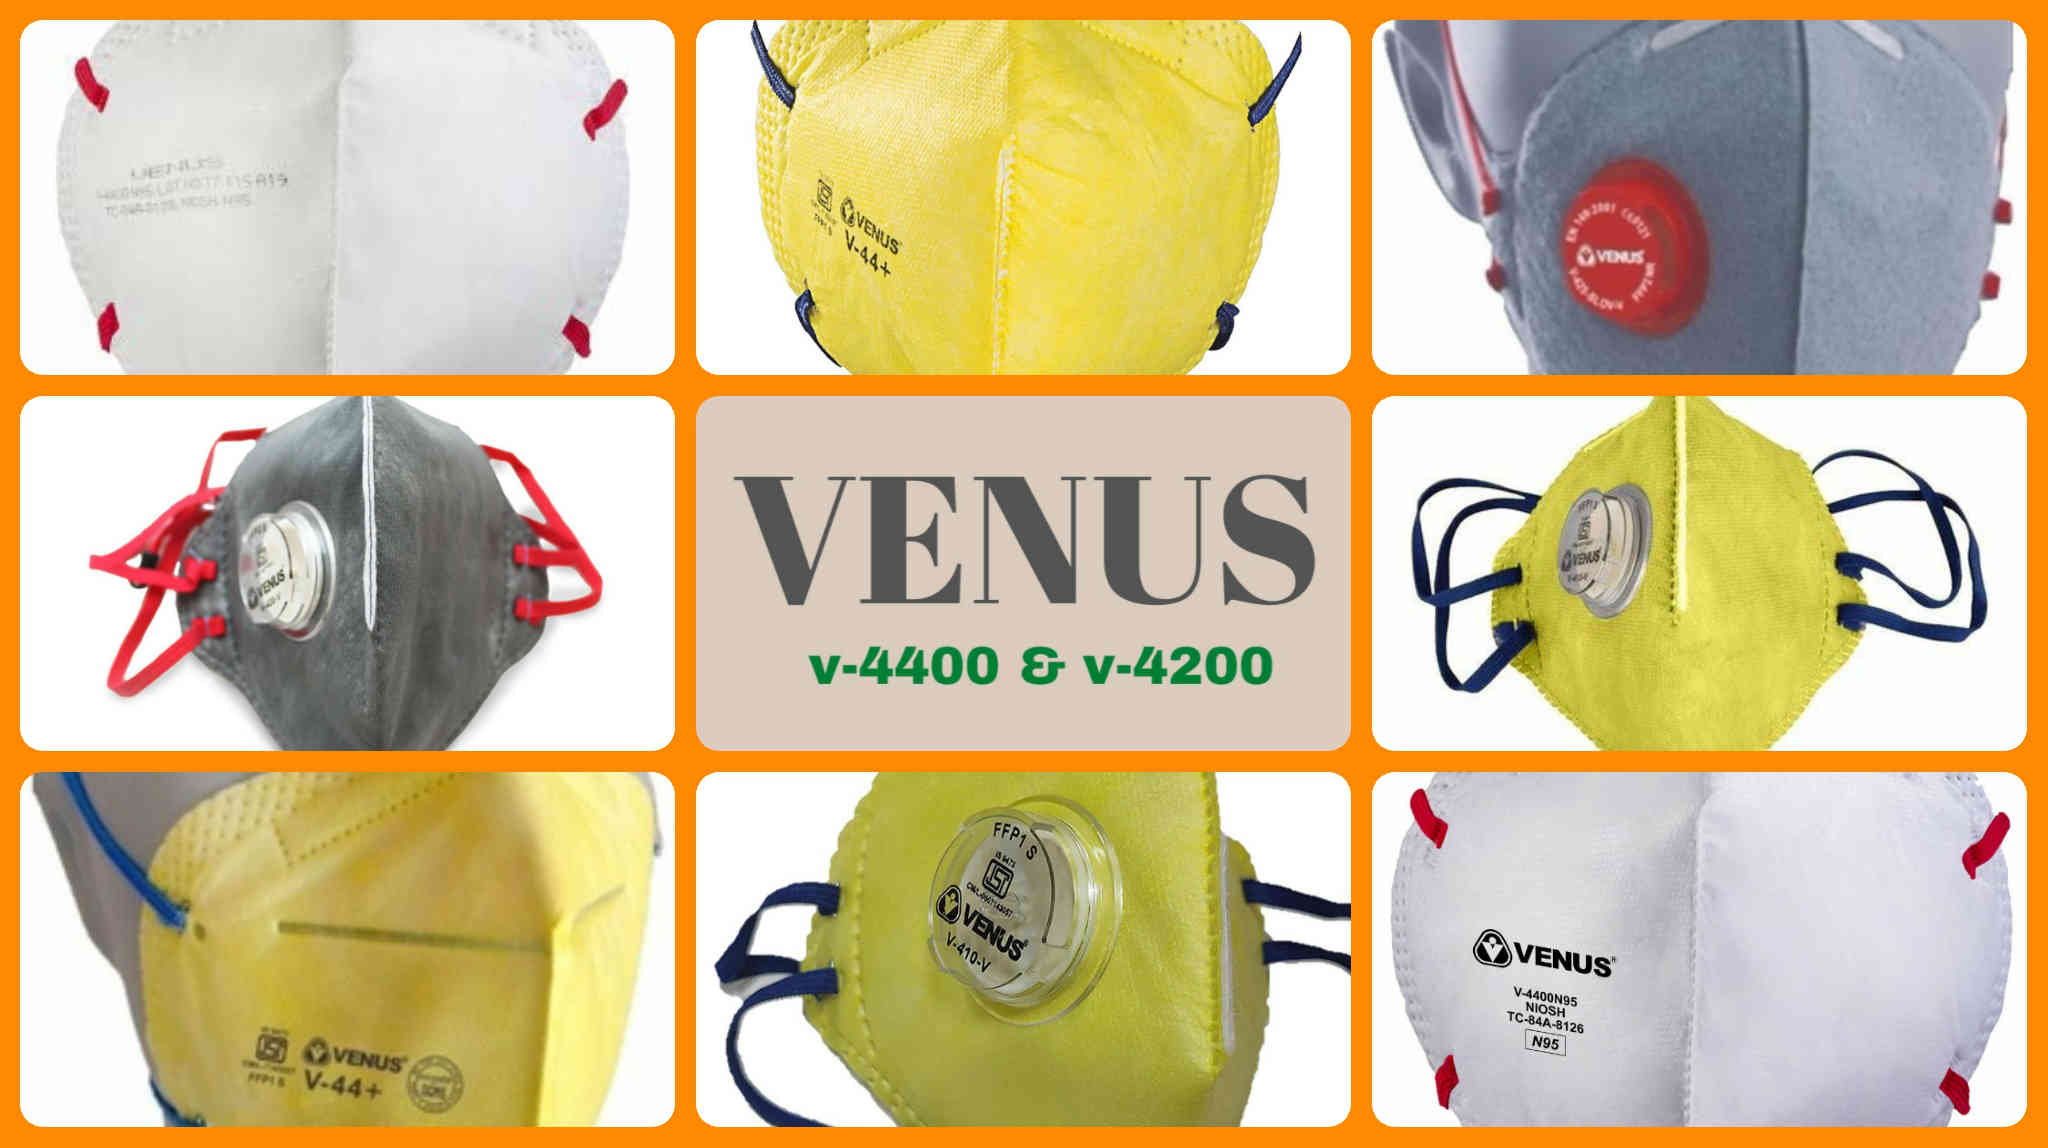 Venus n95 masks: v-4400 mask and v-4200 mask